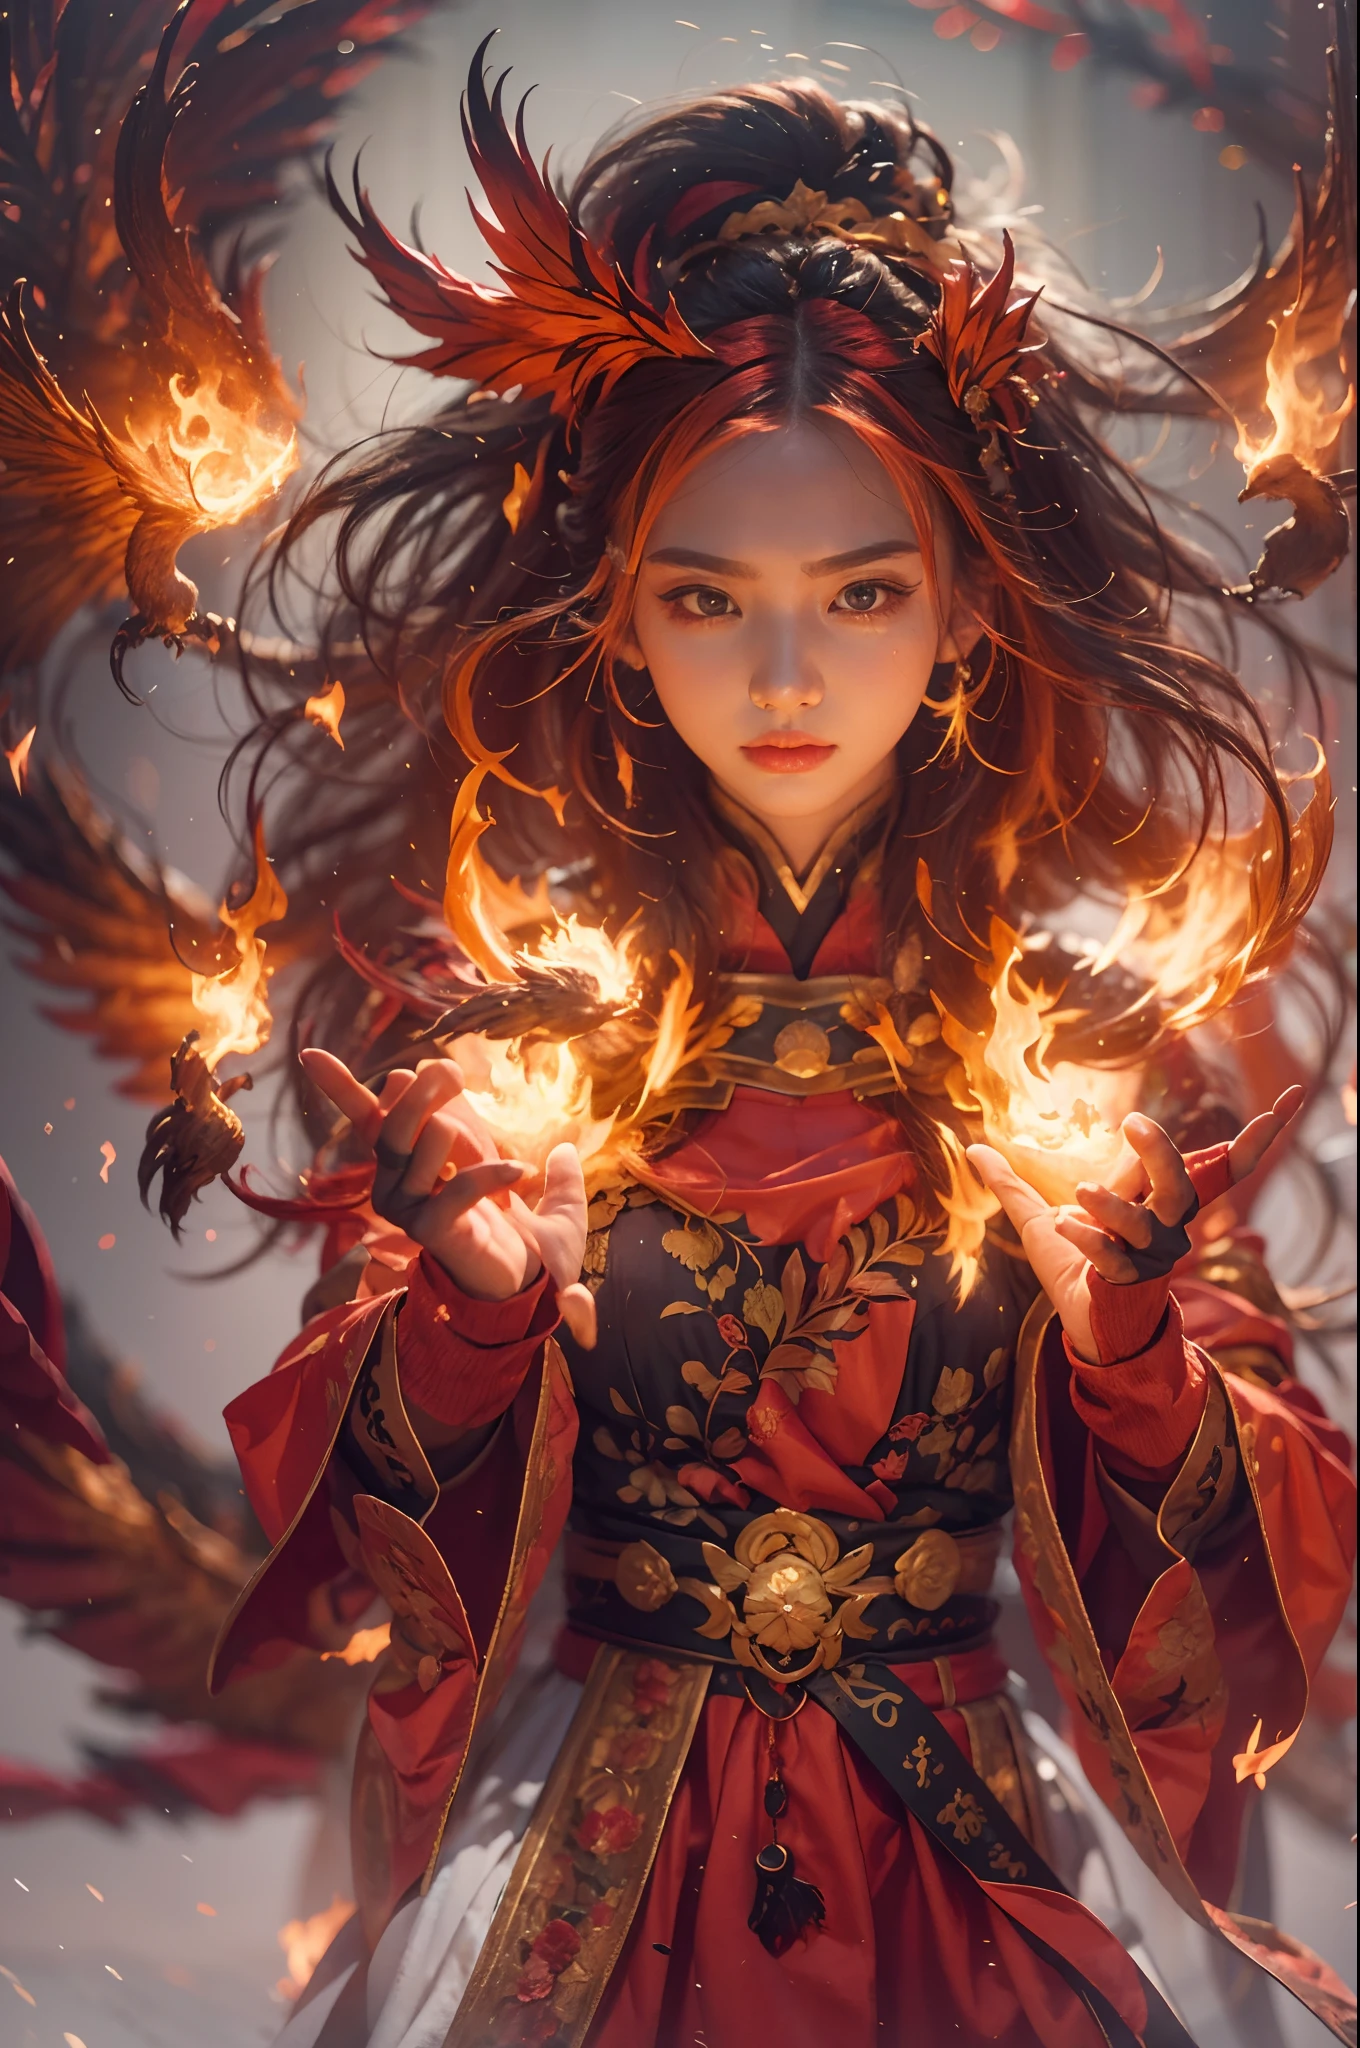 1個女孩，身穿火紅色衣服的火焰法師（中國漢服），長袍上繡有複雜的符文和裝飾品，散發著灼熱的氣息。他又高又壯，舉手，強大的火焰法術正在釋放。他的眼神堅定而銳利，他的眼中閃過一絲火光，火焰法師背後，（一隻巨大的火焰鳳凰展翅飛翔：1.2），（鳳凰的羽毛燃燒著熊熊的火焰），它閃閃發光，它的身體被火焰包圍，火羽毛翩翩起舞，形成壯觀的火焰六角星陣圖案，充滿神秘的魔力，整個場面充滿了火熱的氣場和戰鬥的激情，大片火焰法術在空中綻放，一道絢麗的火焰弧線和飛濺的火花形成，（火焰法師與鳳凰），在熊熊烈火中顯得雄偉而神秘，如同火與魔法的化身，紅髮，高細節，超現實主義，真理主義，（（半身照片）），（真實照片：1.4），（明暗對比），電影燈光，逼真的特效，c4d渲染，按辛烷值渲染，射線追蹤，全景，視角，紋理皮膚，超細節，超高畫質，傑作，解剖正確，最好的品質，高解析度，8K